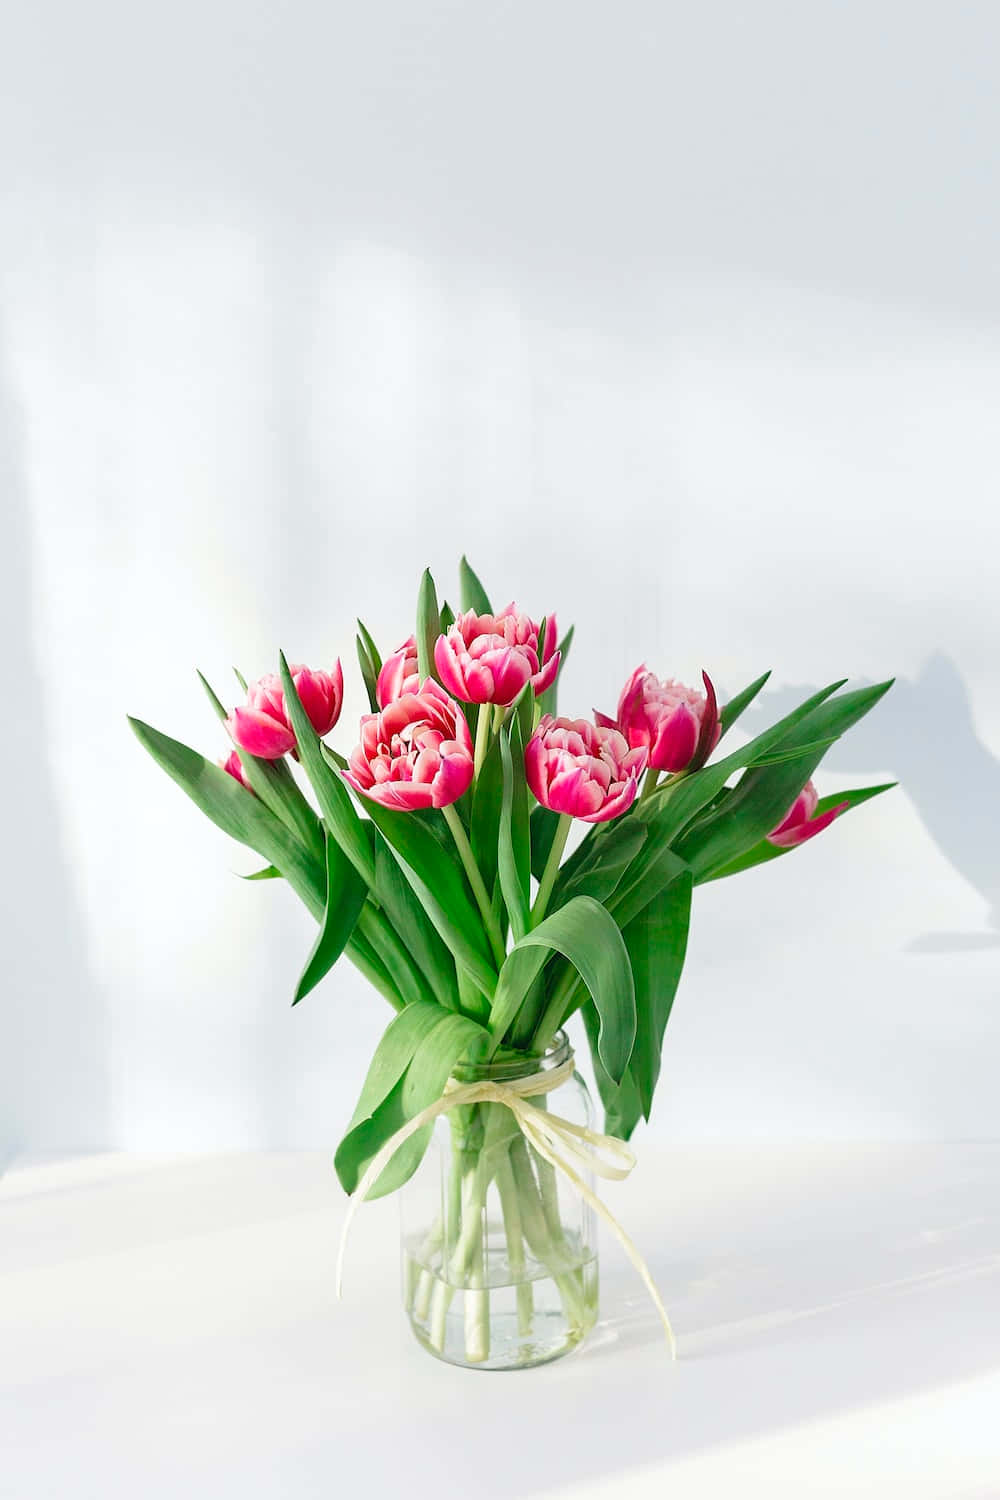 Iluminea Sua Primavera Com Uma Colorida Flor De Tulipa, Garantida Para Trazer Beleza A Qualquer Visualização.